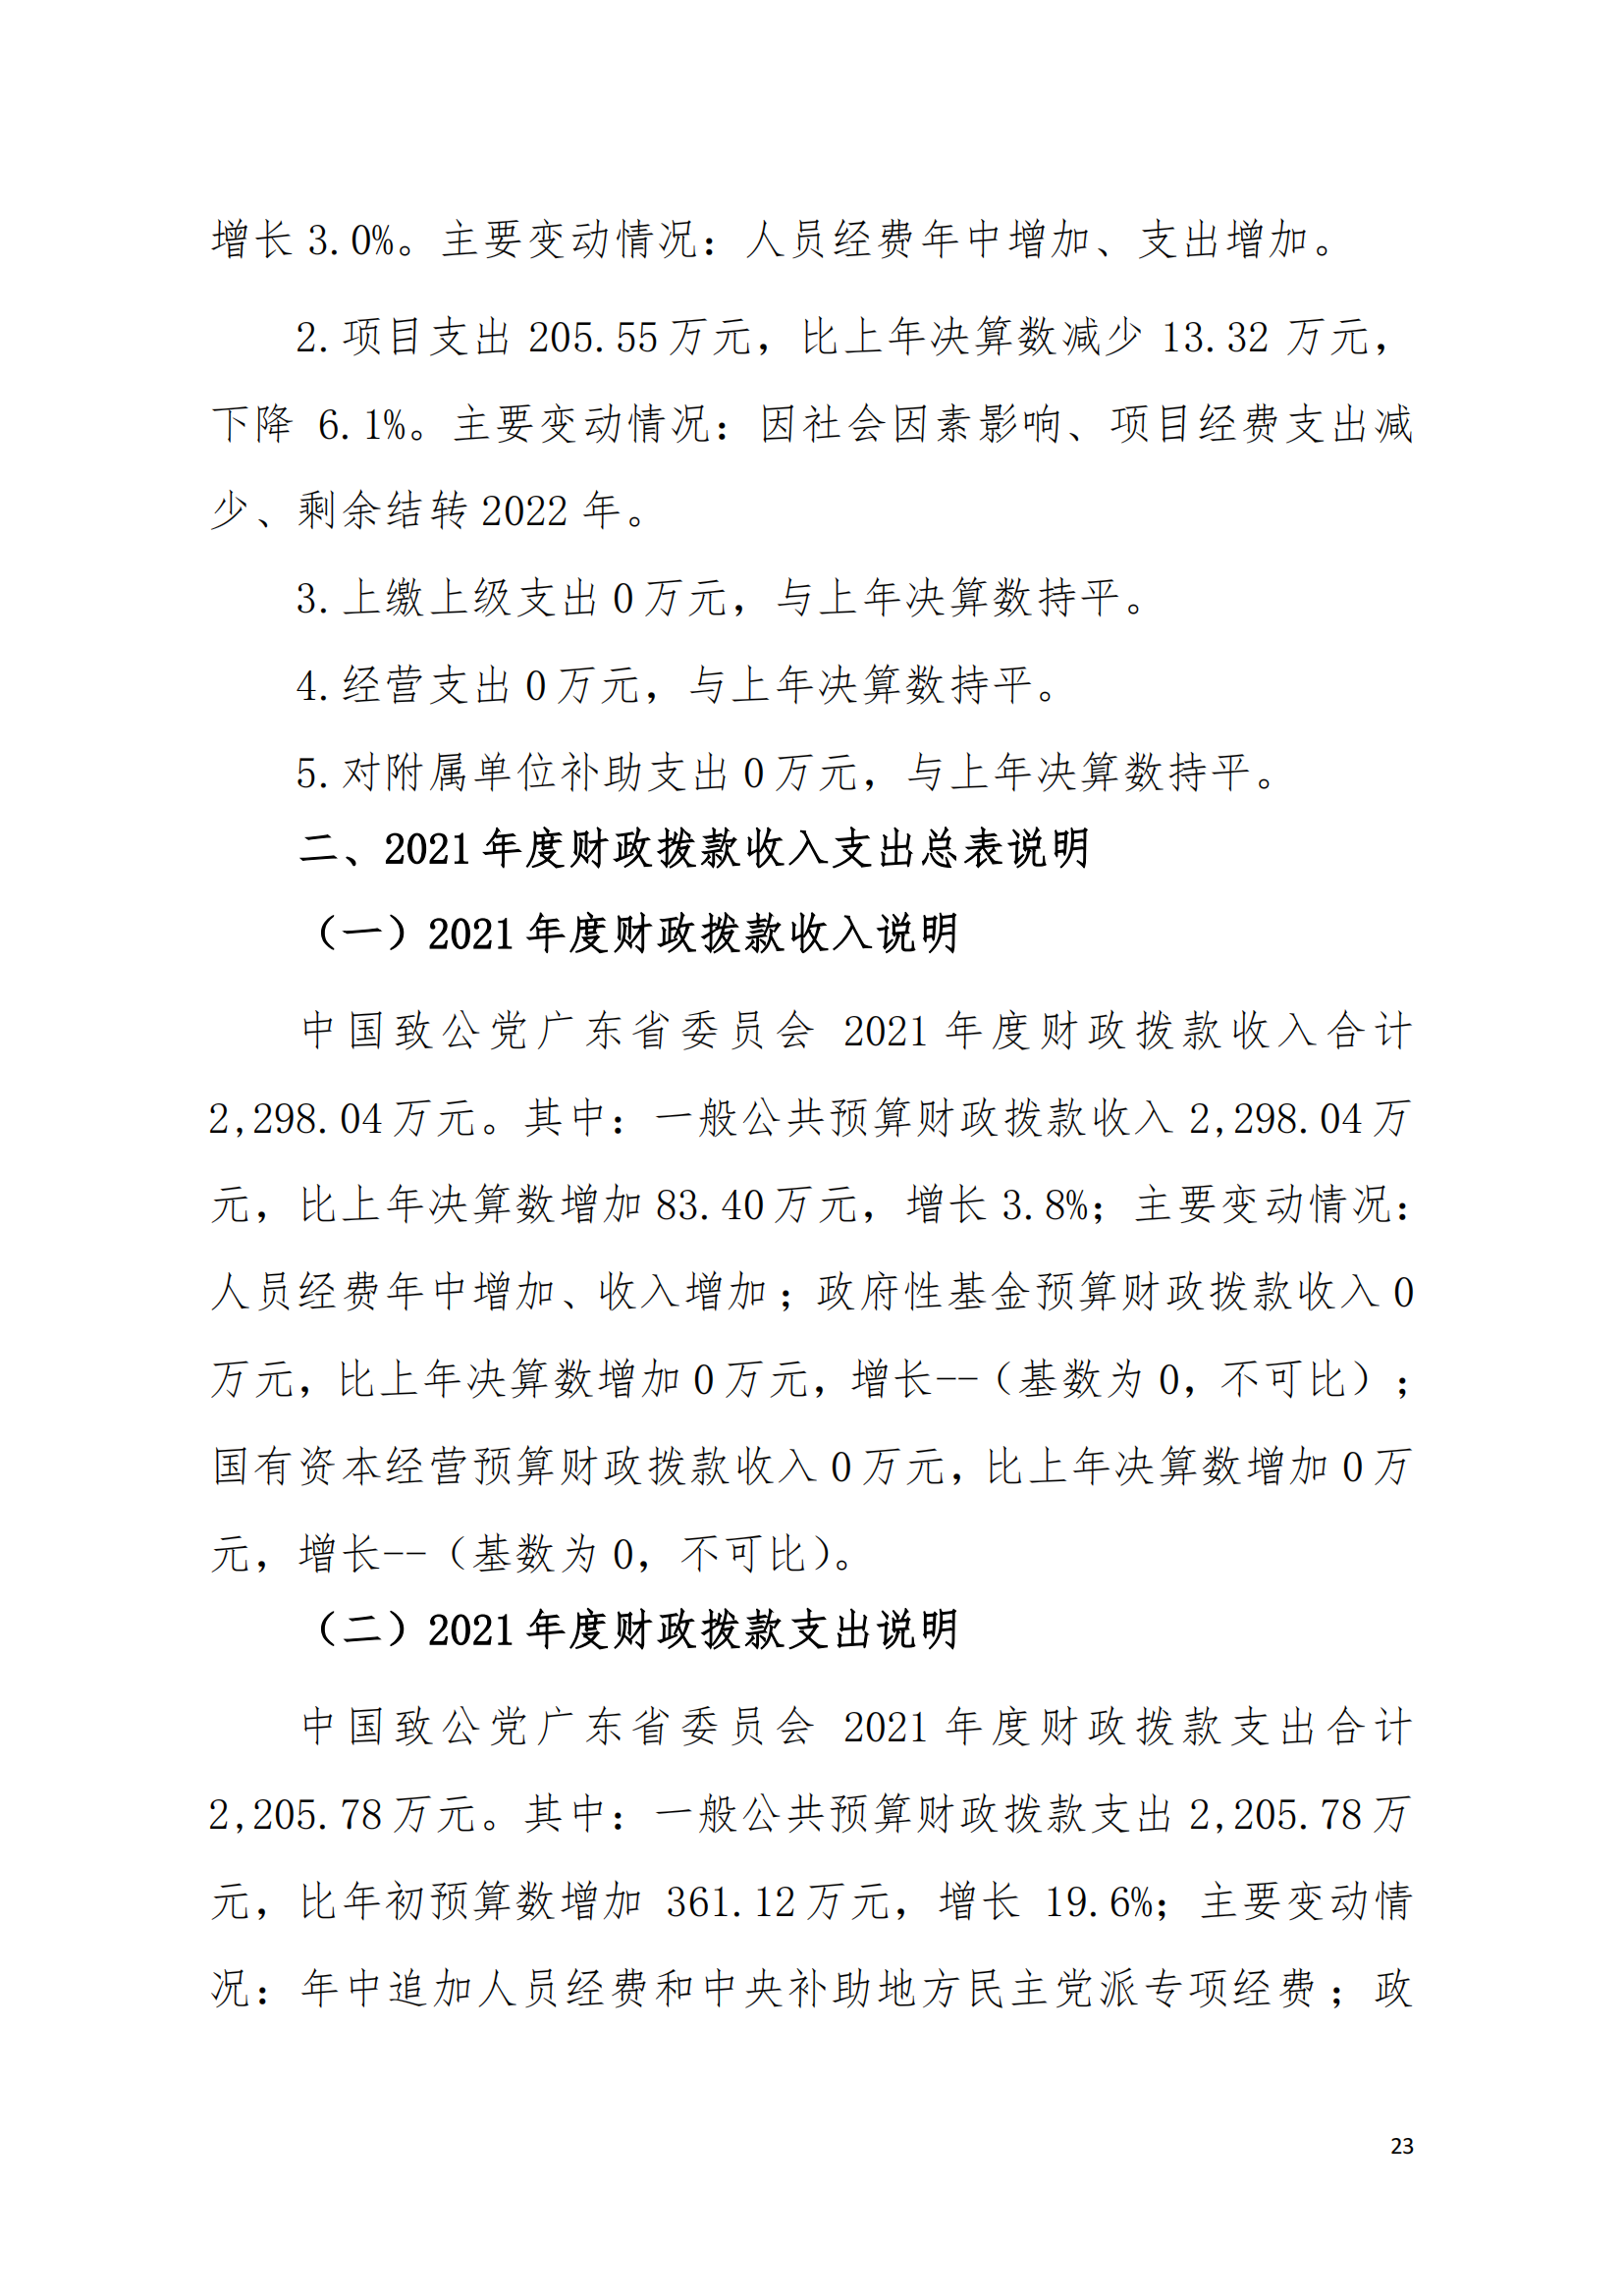 2021年中国致公党广东省委员会部门决算（0706更新）_22.png